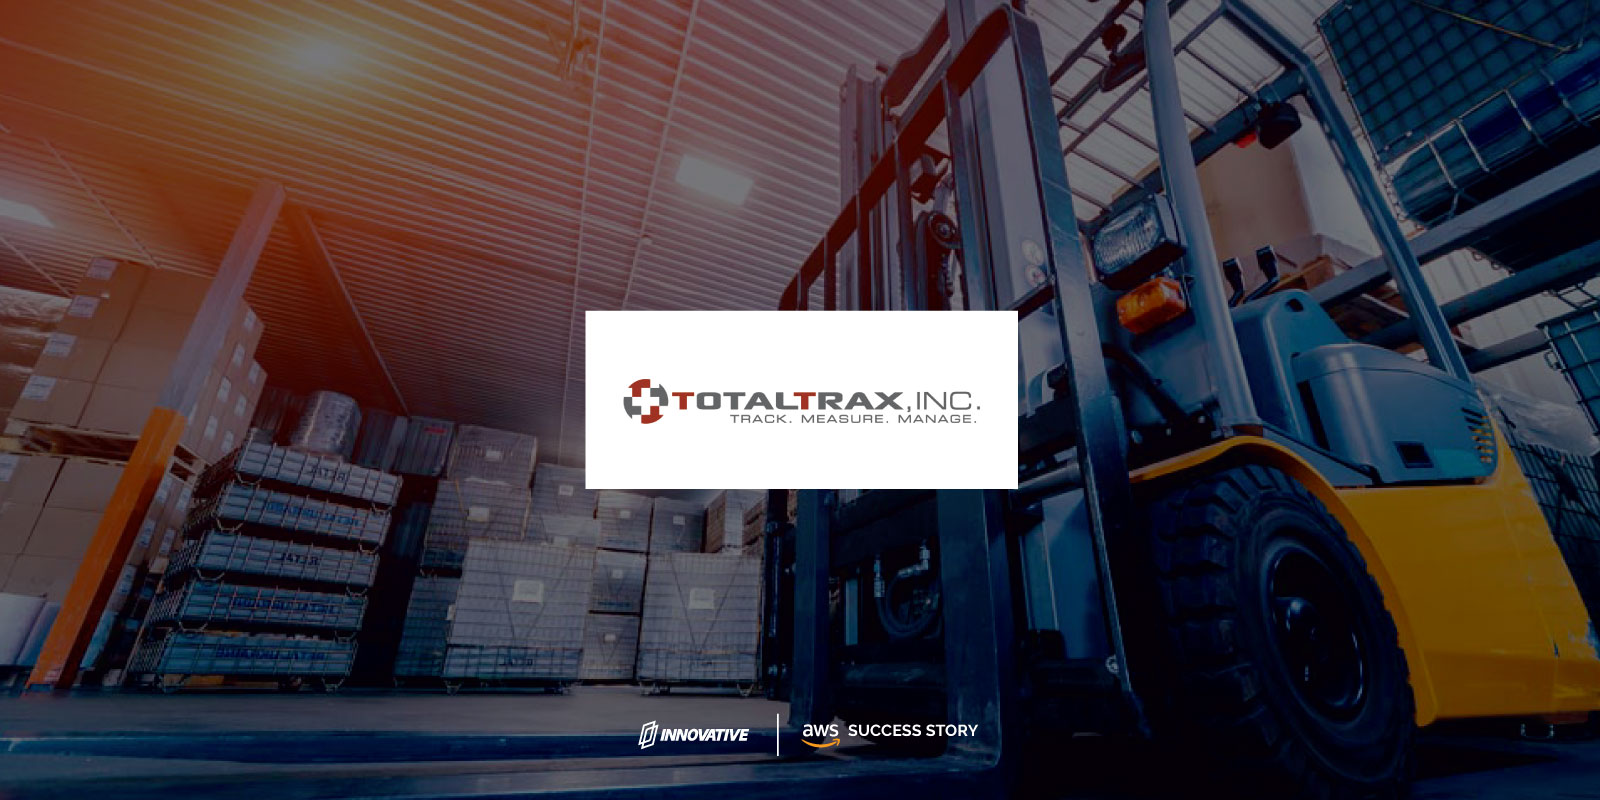 TotalTrax, Inc